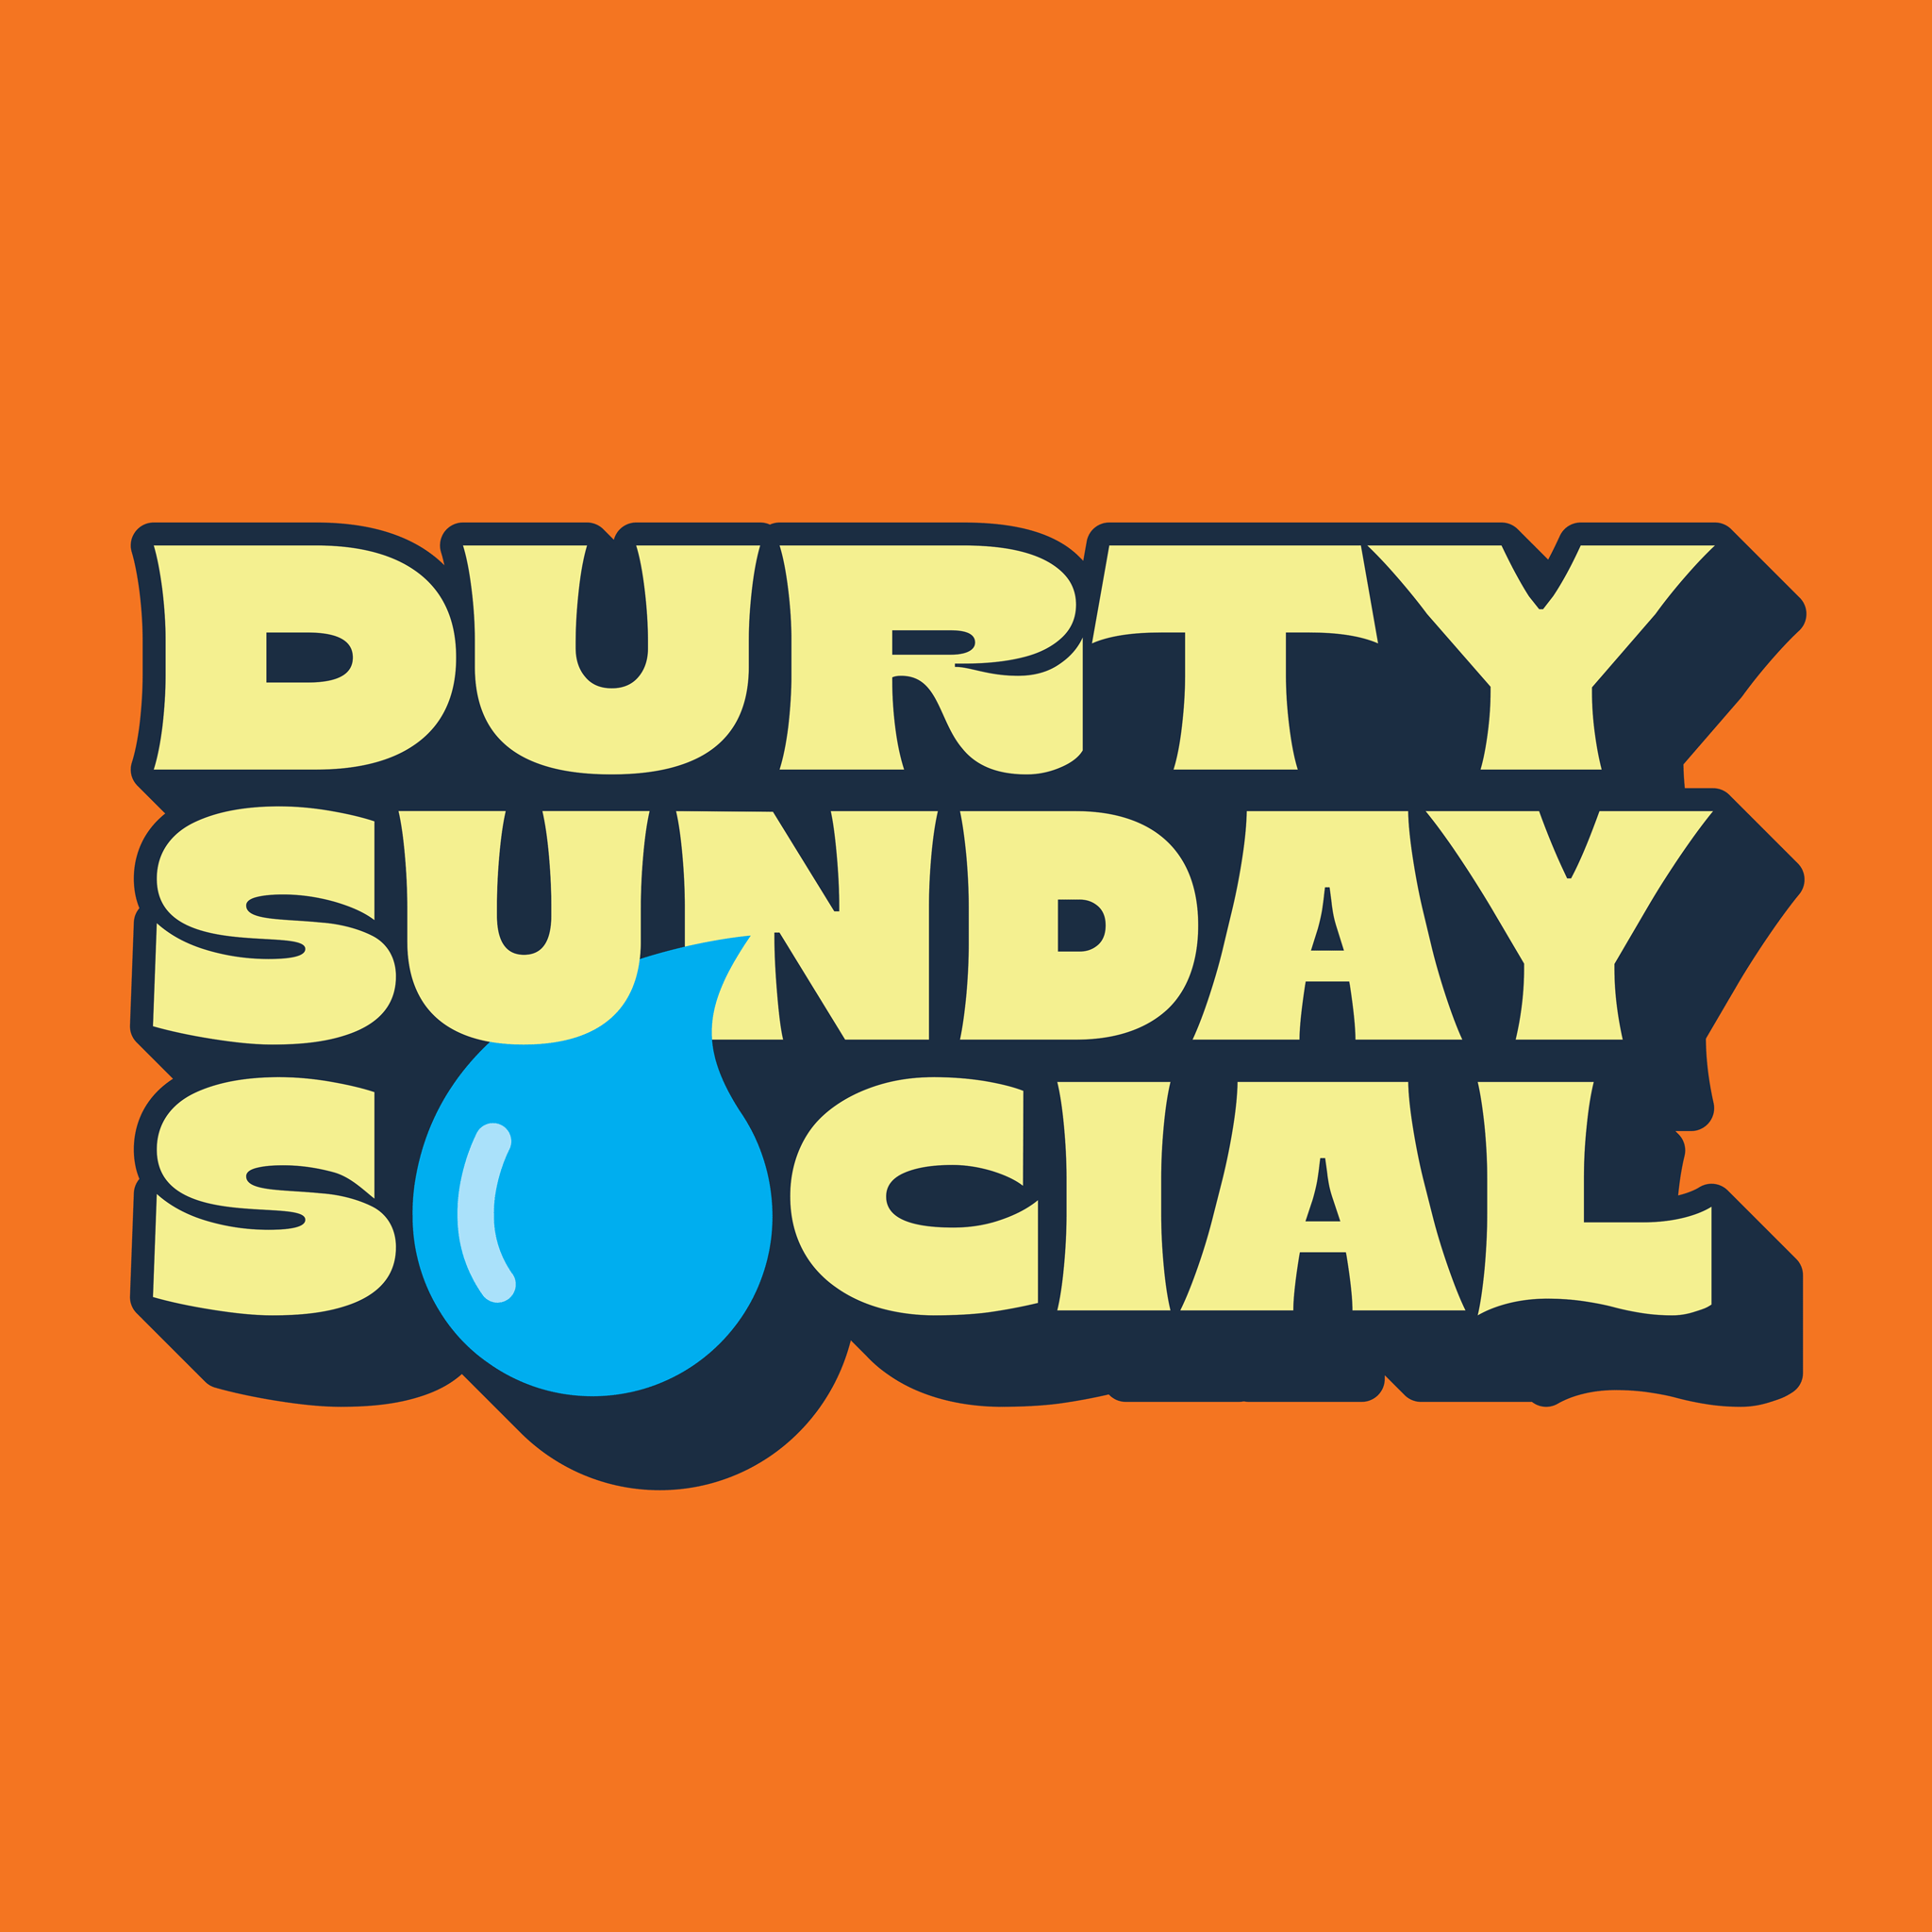 Durty Sunday Social